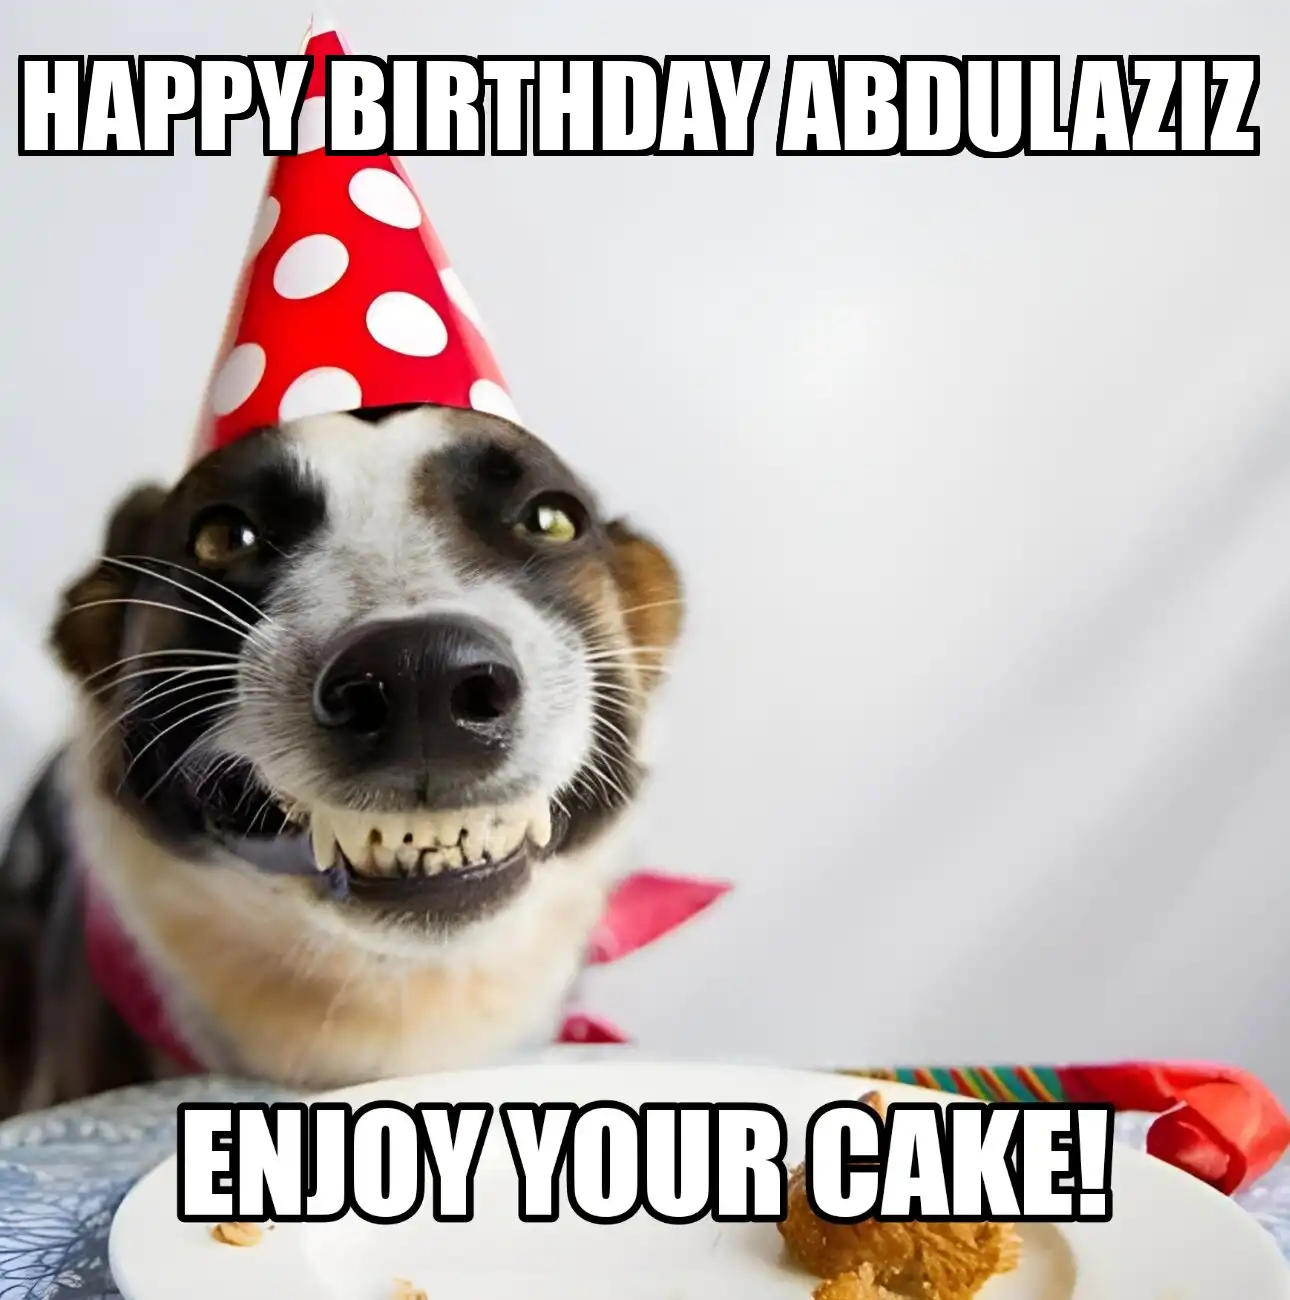 Happy Birthday Abdulaziz Enjoy Your Cake Dog Meme